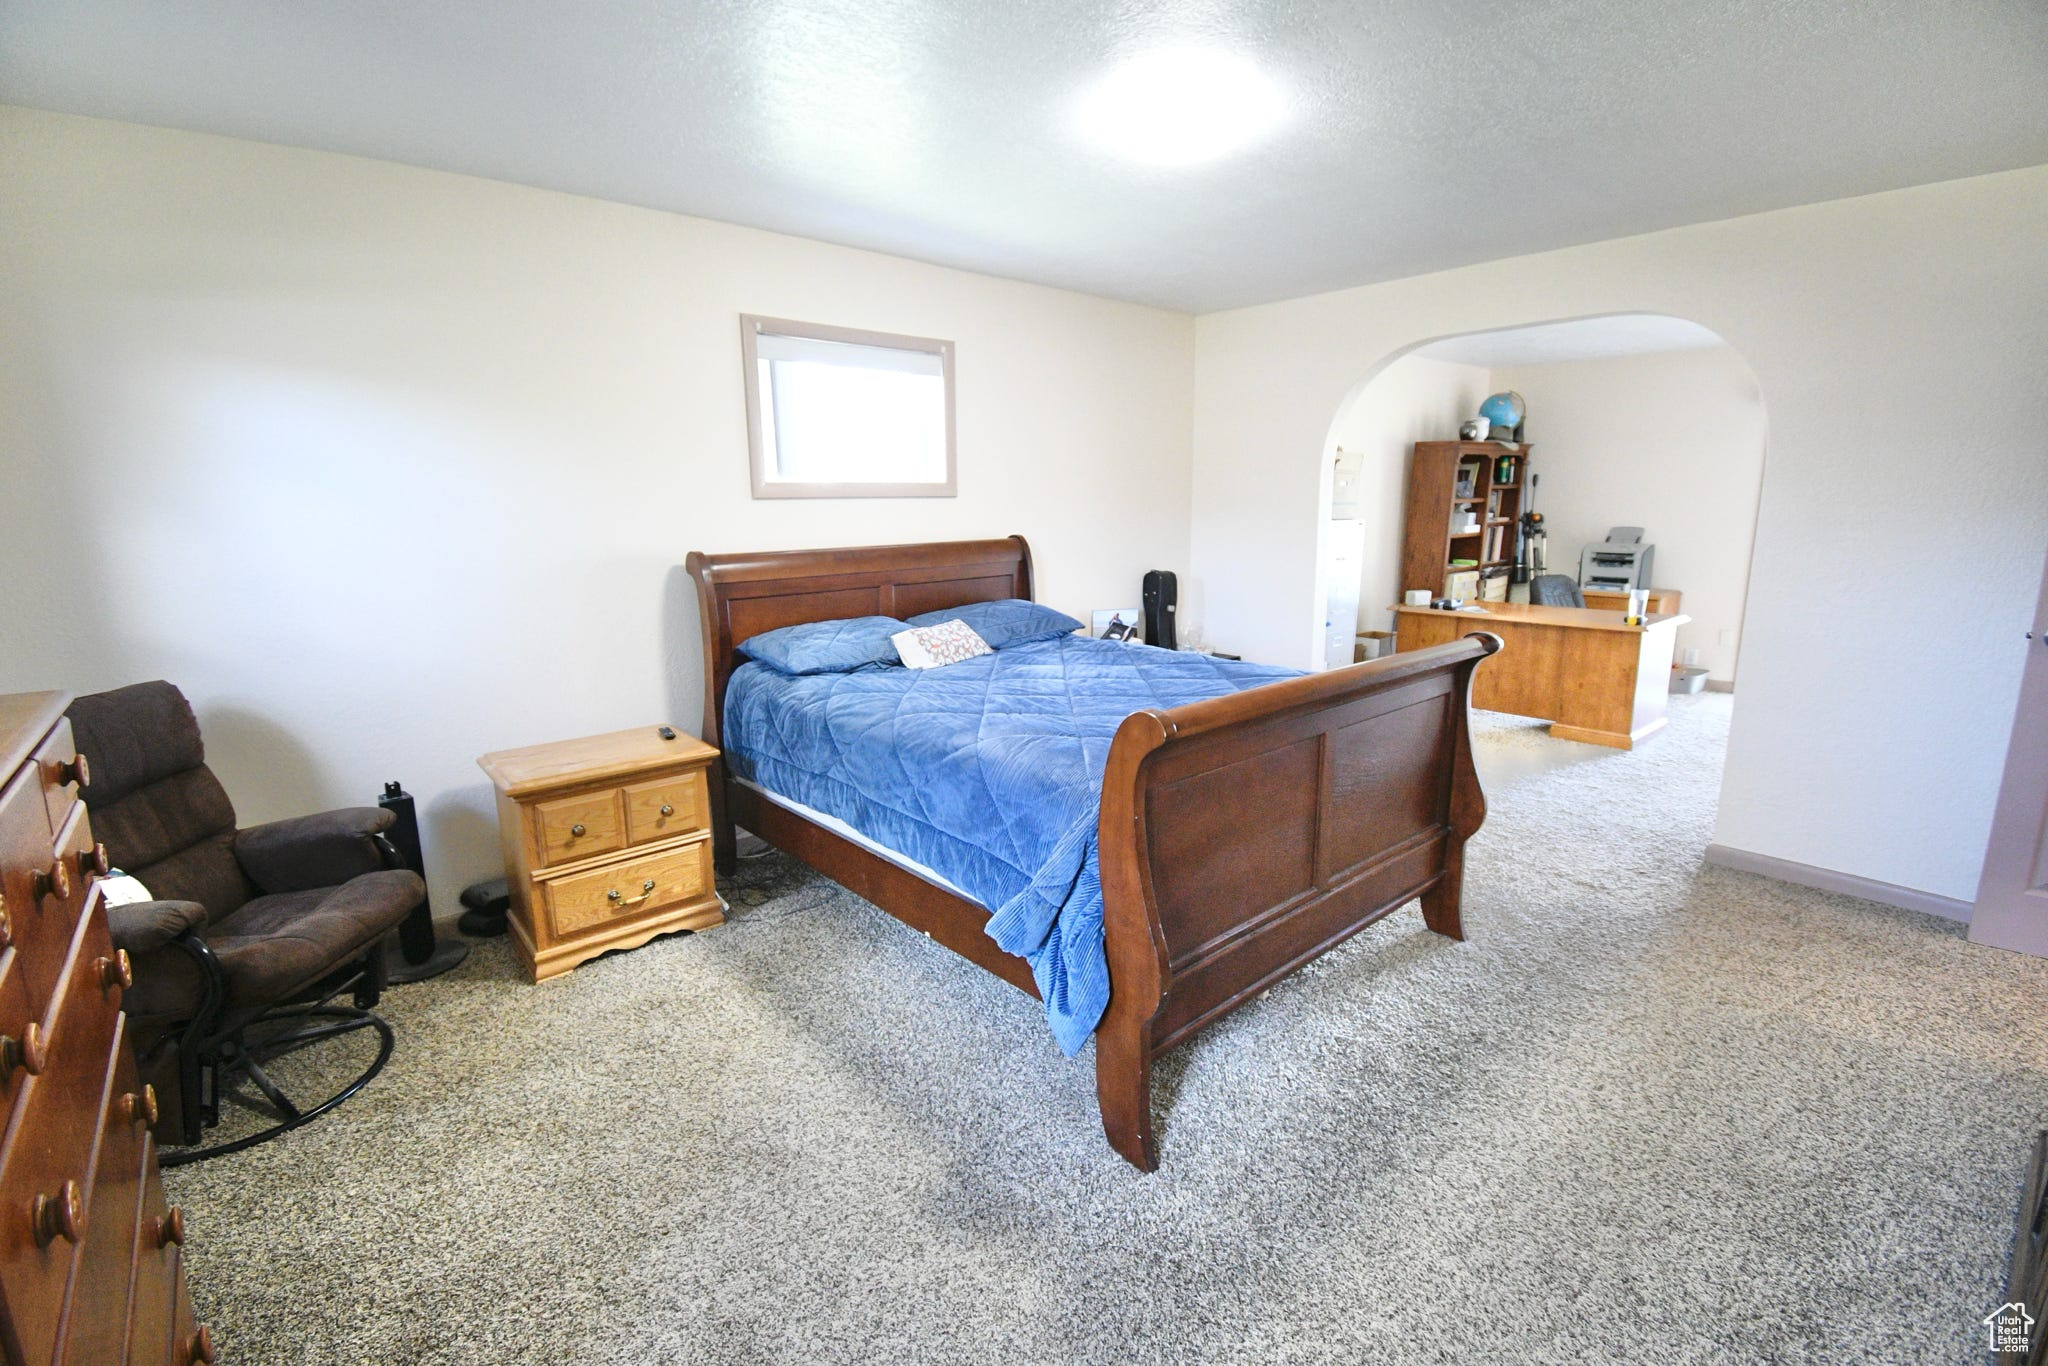 300 N 75 E, Glenwood, Utah 84730, 4 Bedrooms Bedrooms, 12 Rooms Rooms,3 BathroomsBathrooms,Residential,For sale,75,1994826